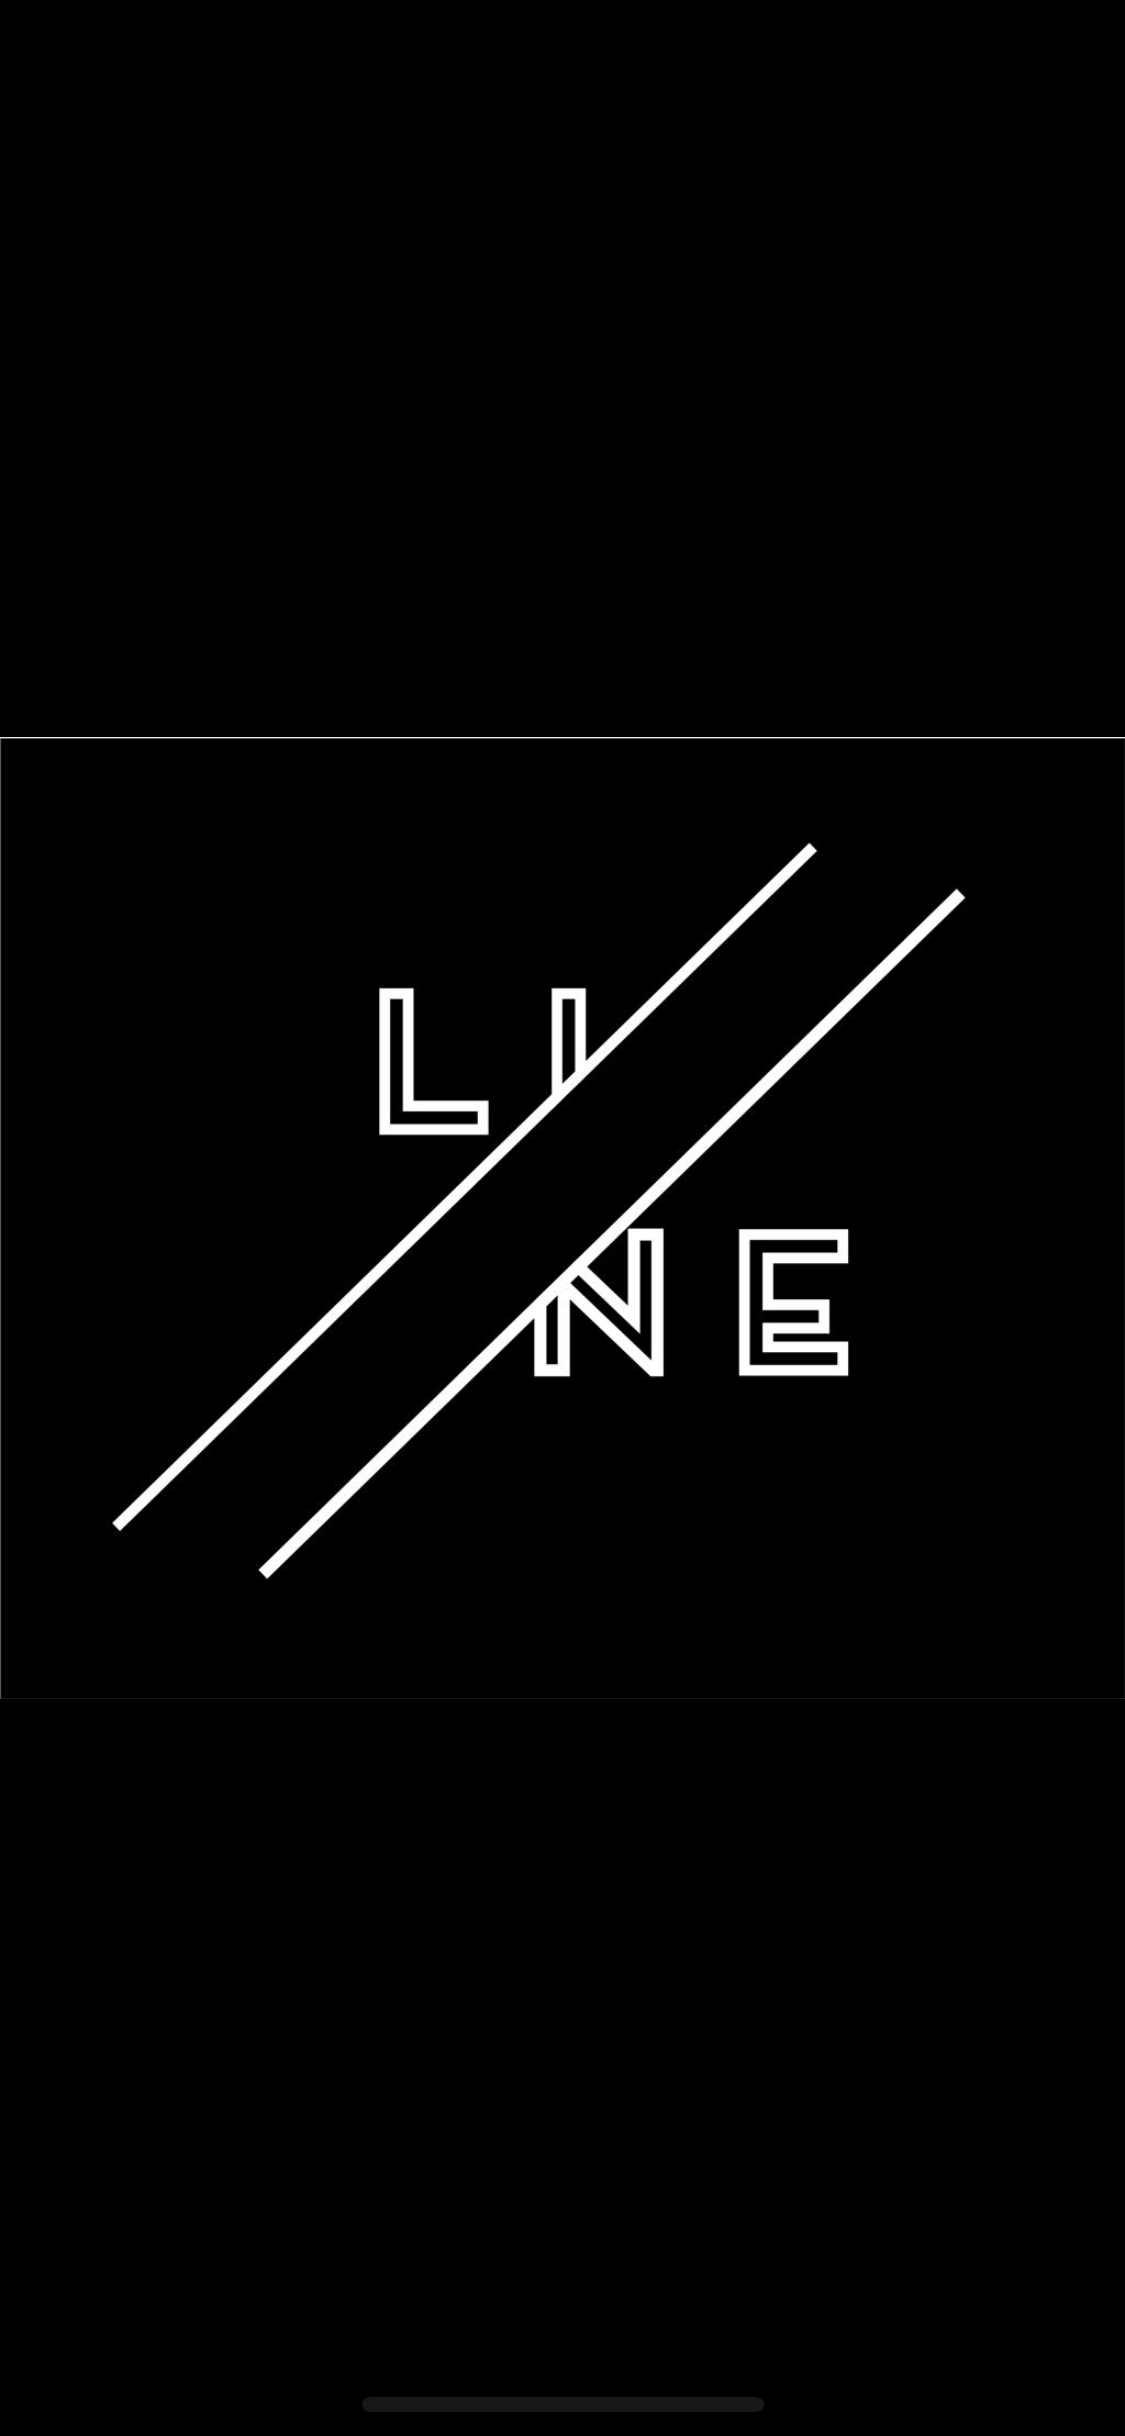 ll Line